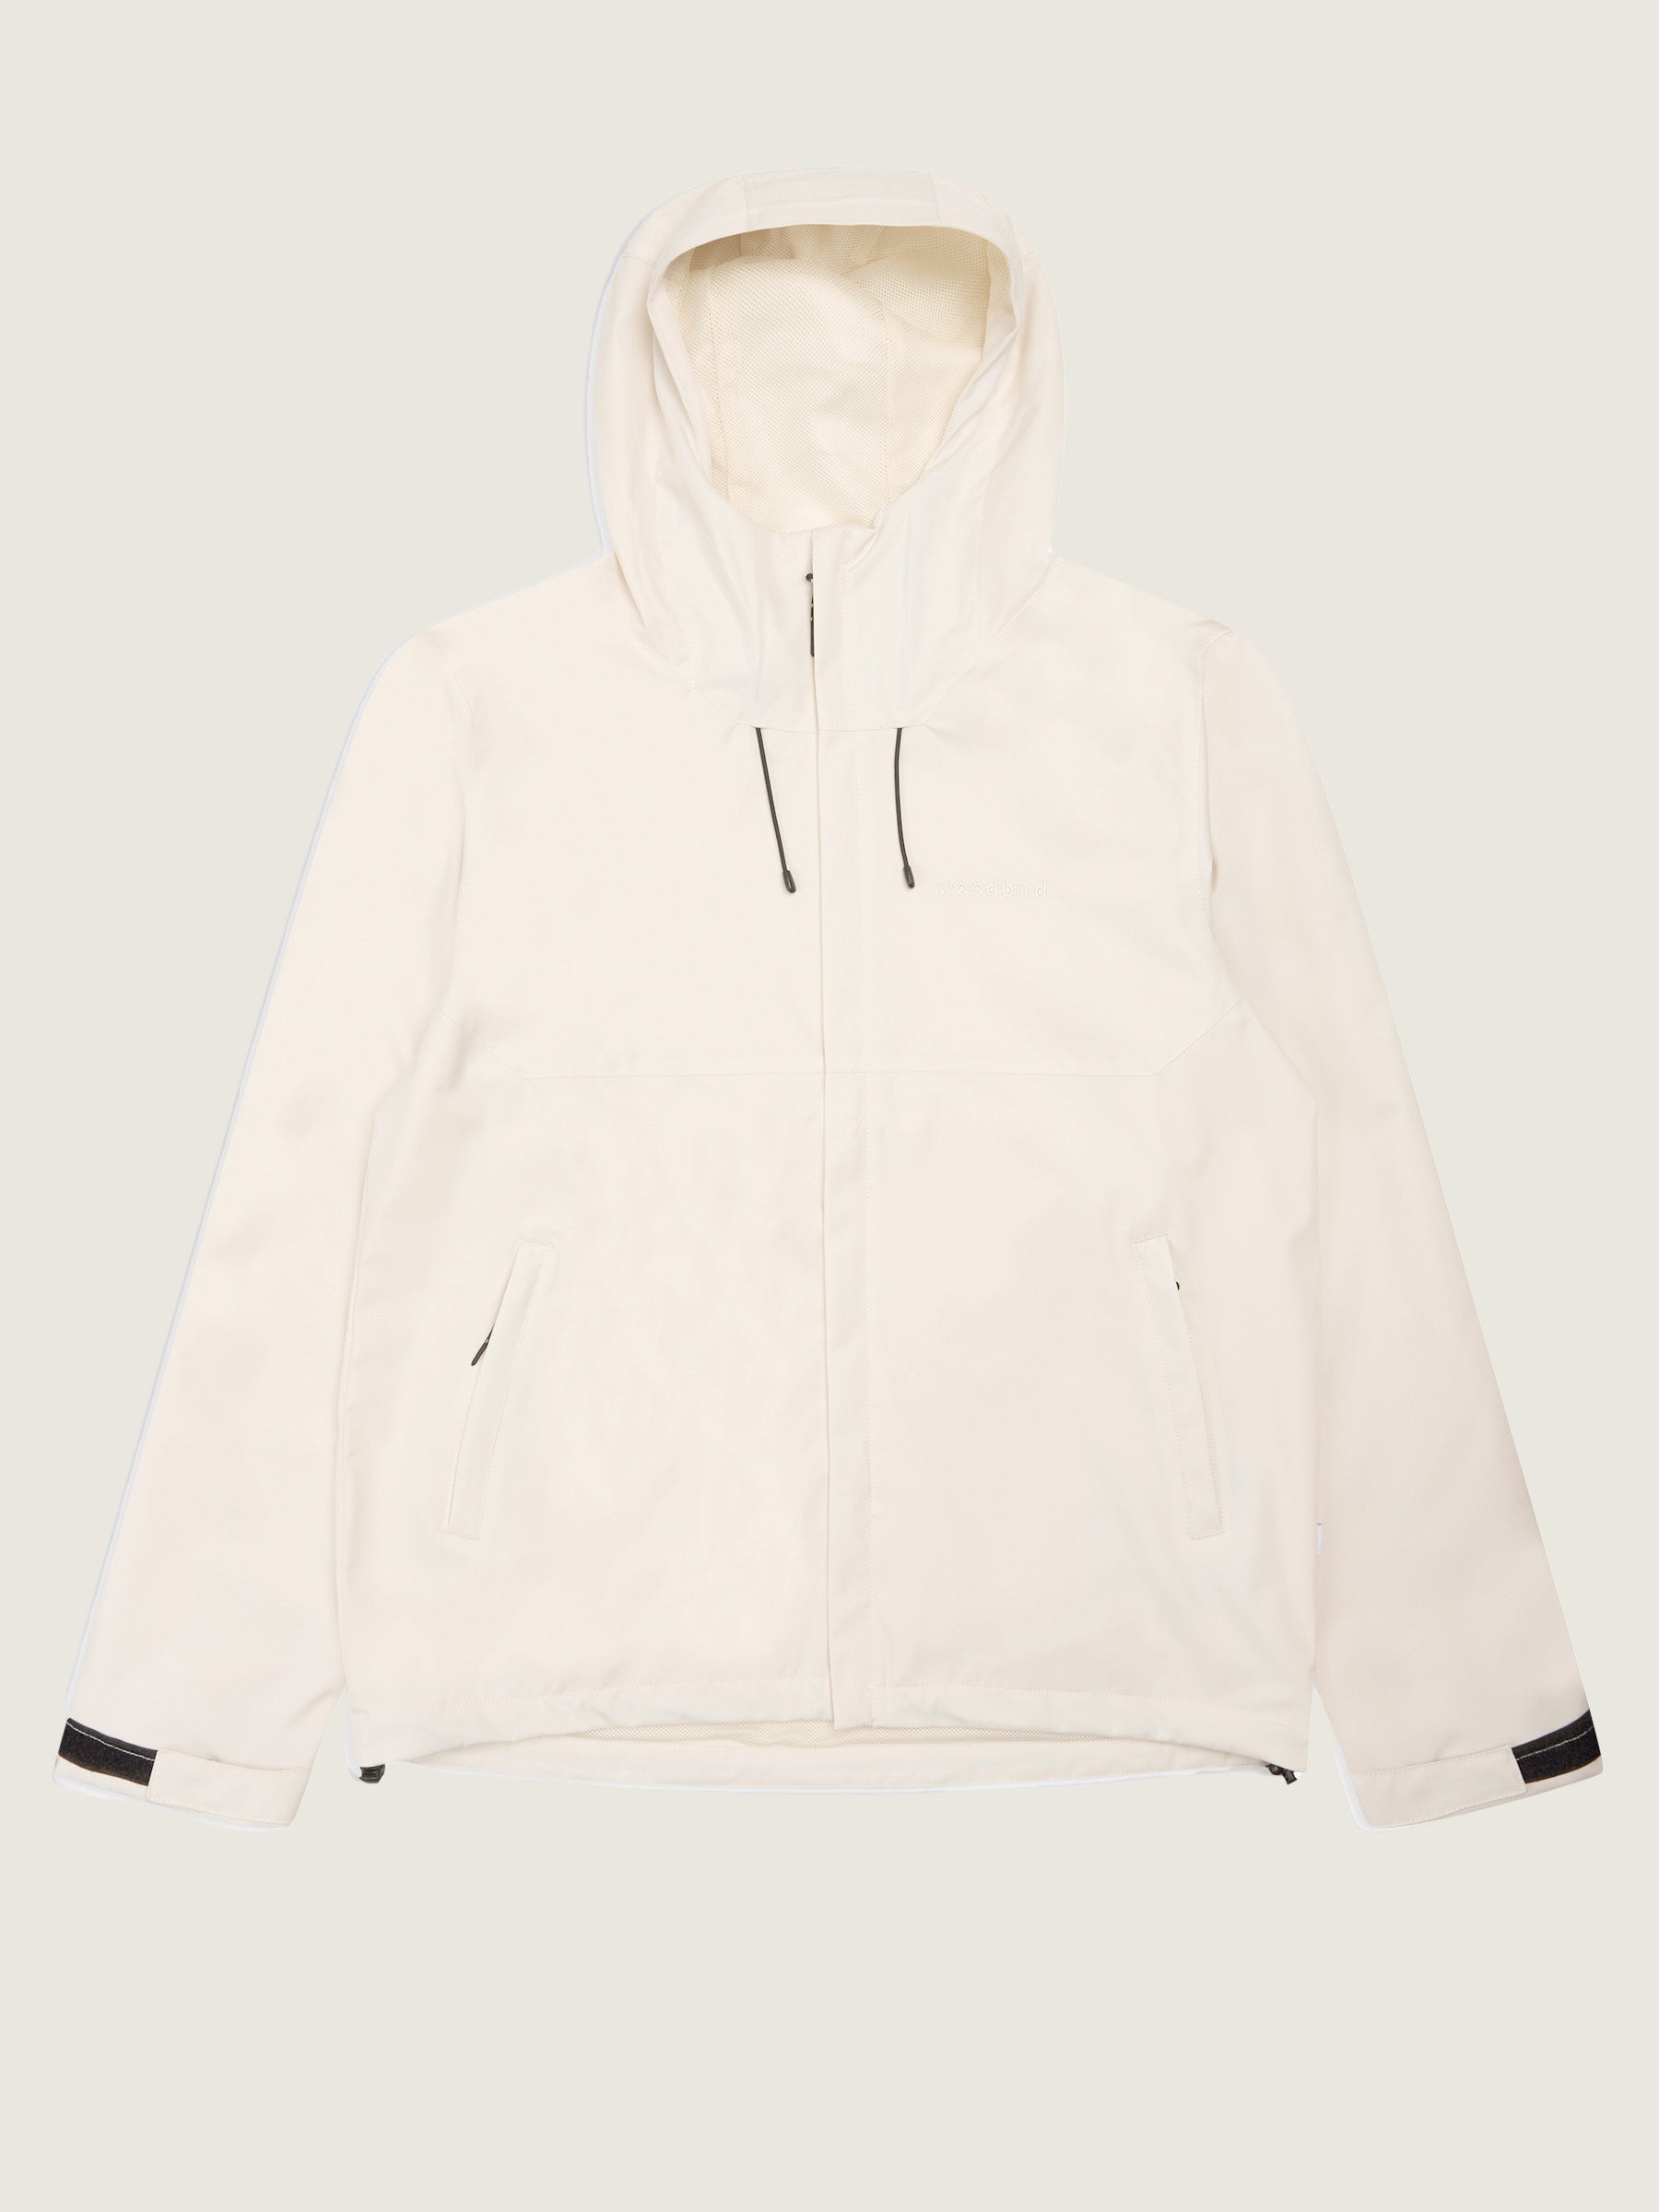 Woodbird Mats Frenzy Jacket Outerwear Off White